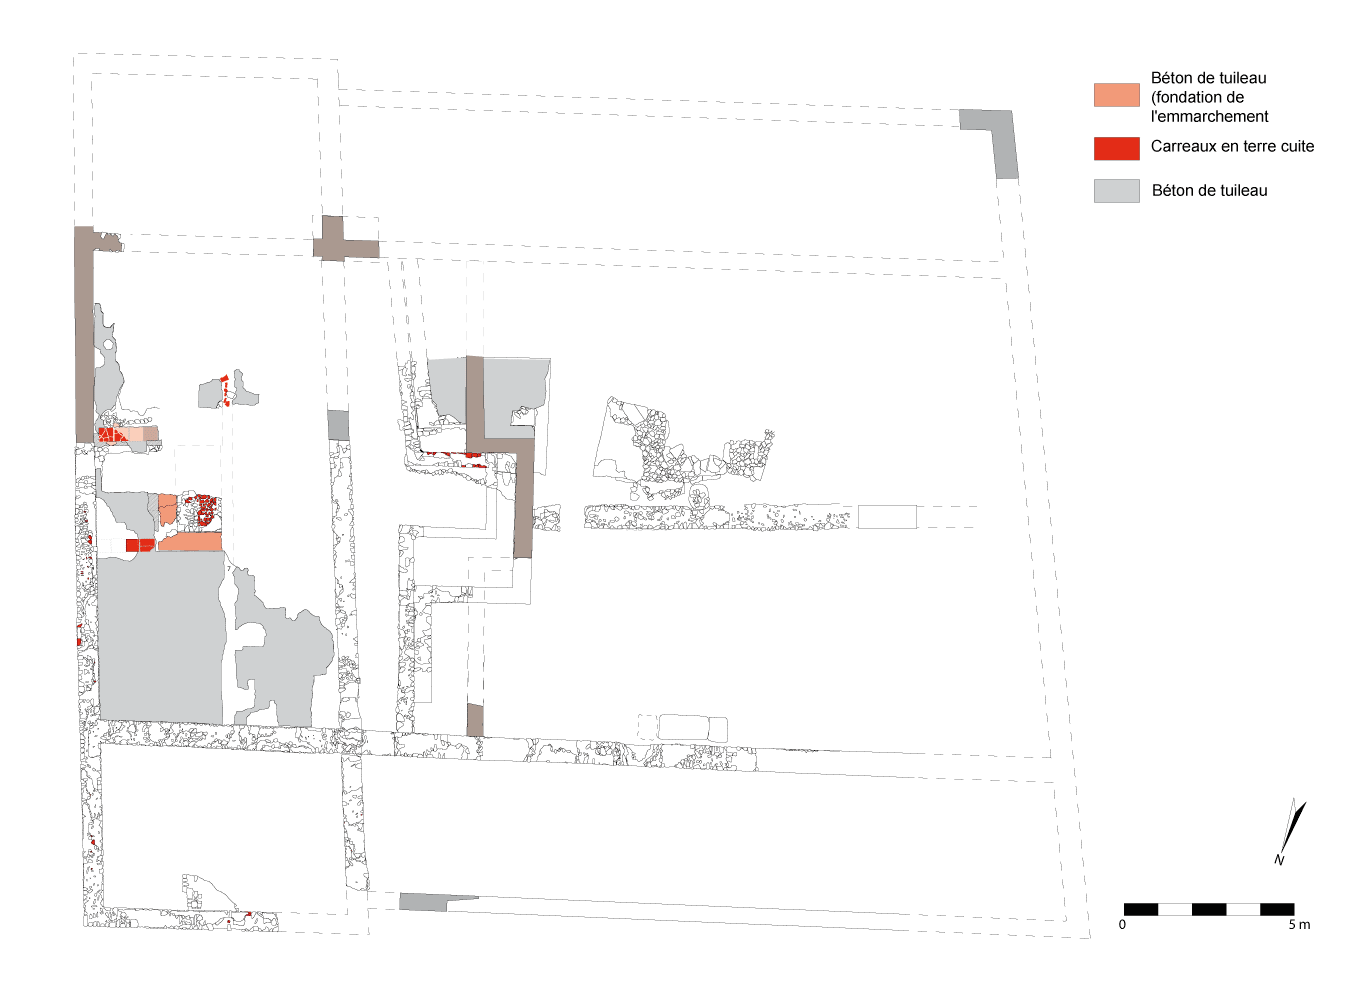 Plan de la basilique dans son dernier état (phase IV),(crédit L. Pirault / INRAP, 2005)